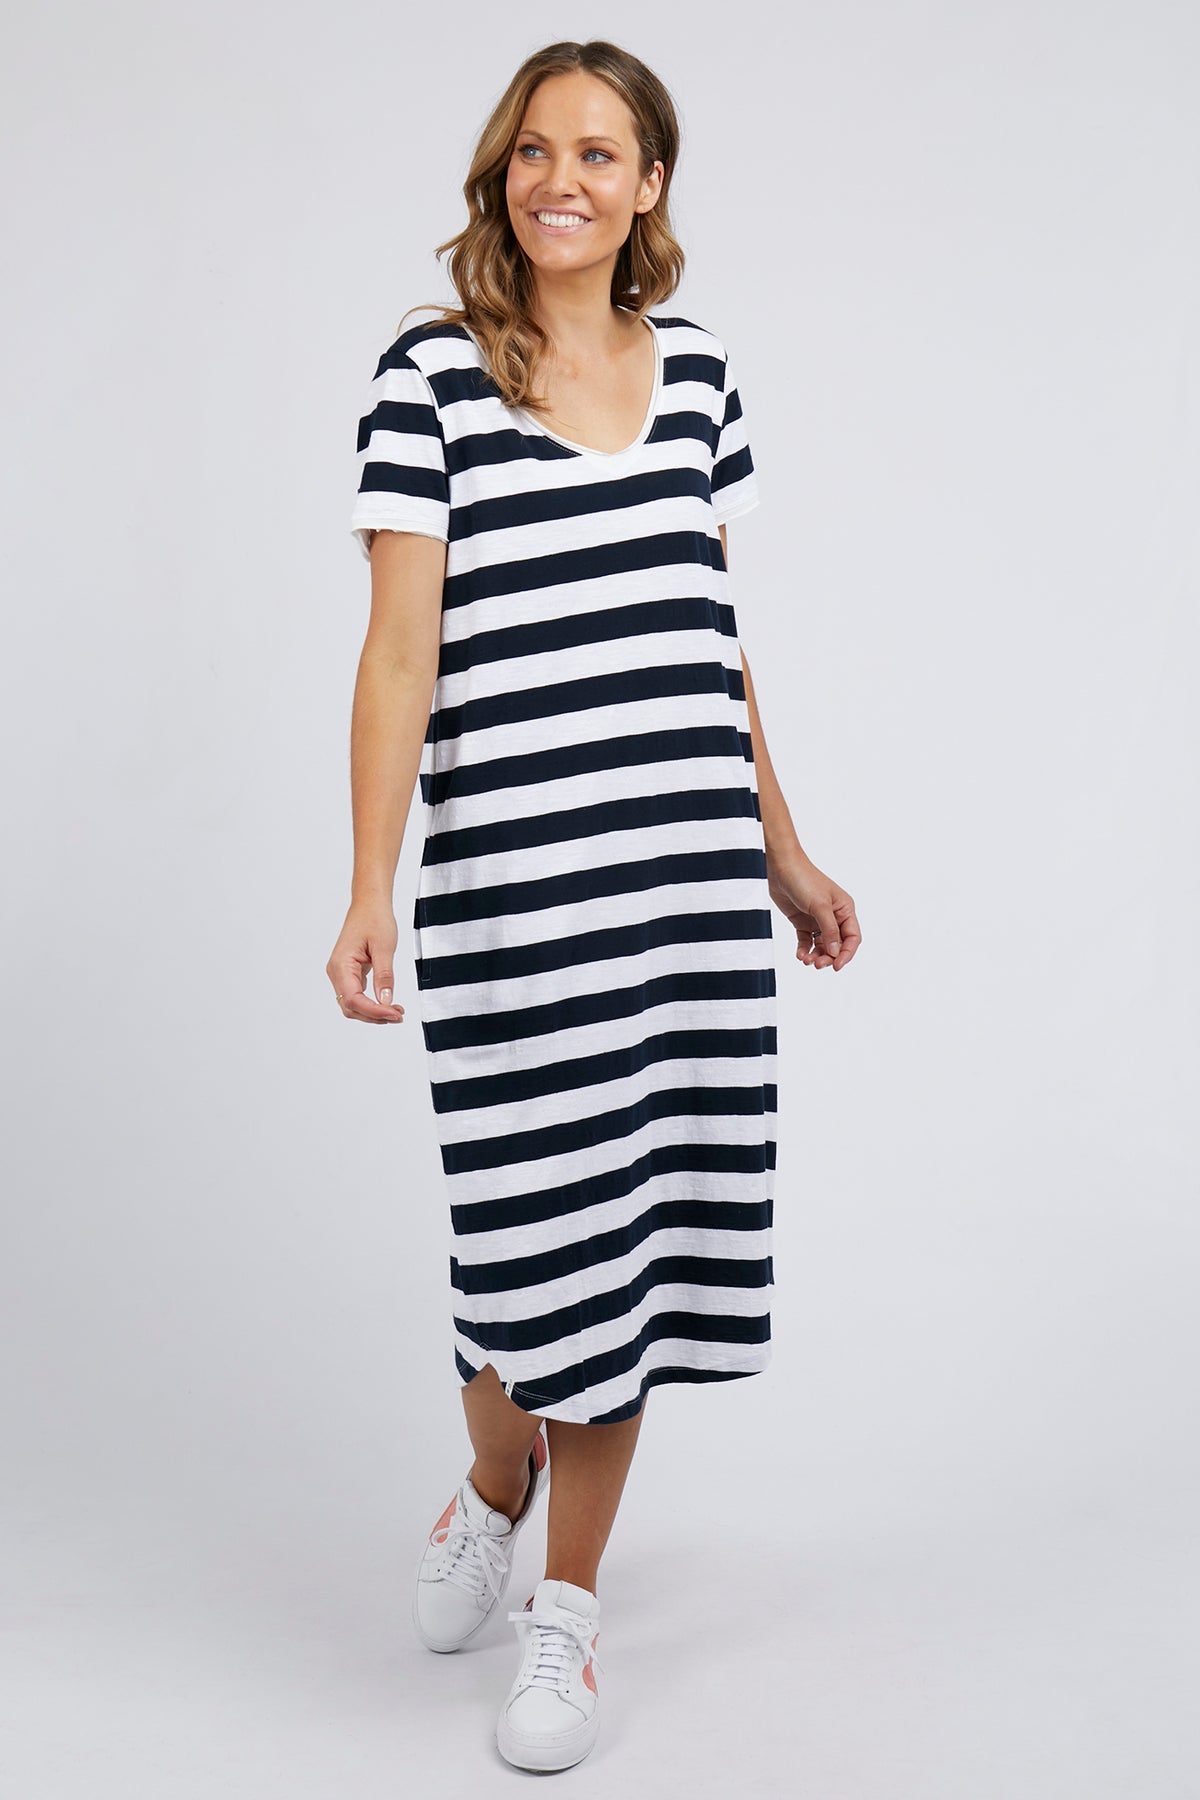 Maeve Dress Navy & White Stripe